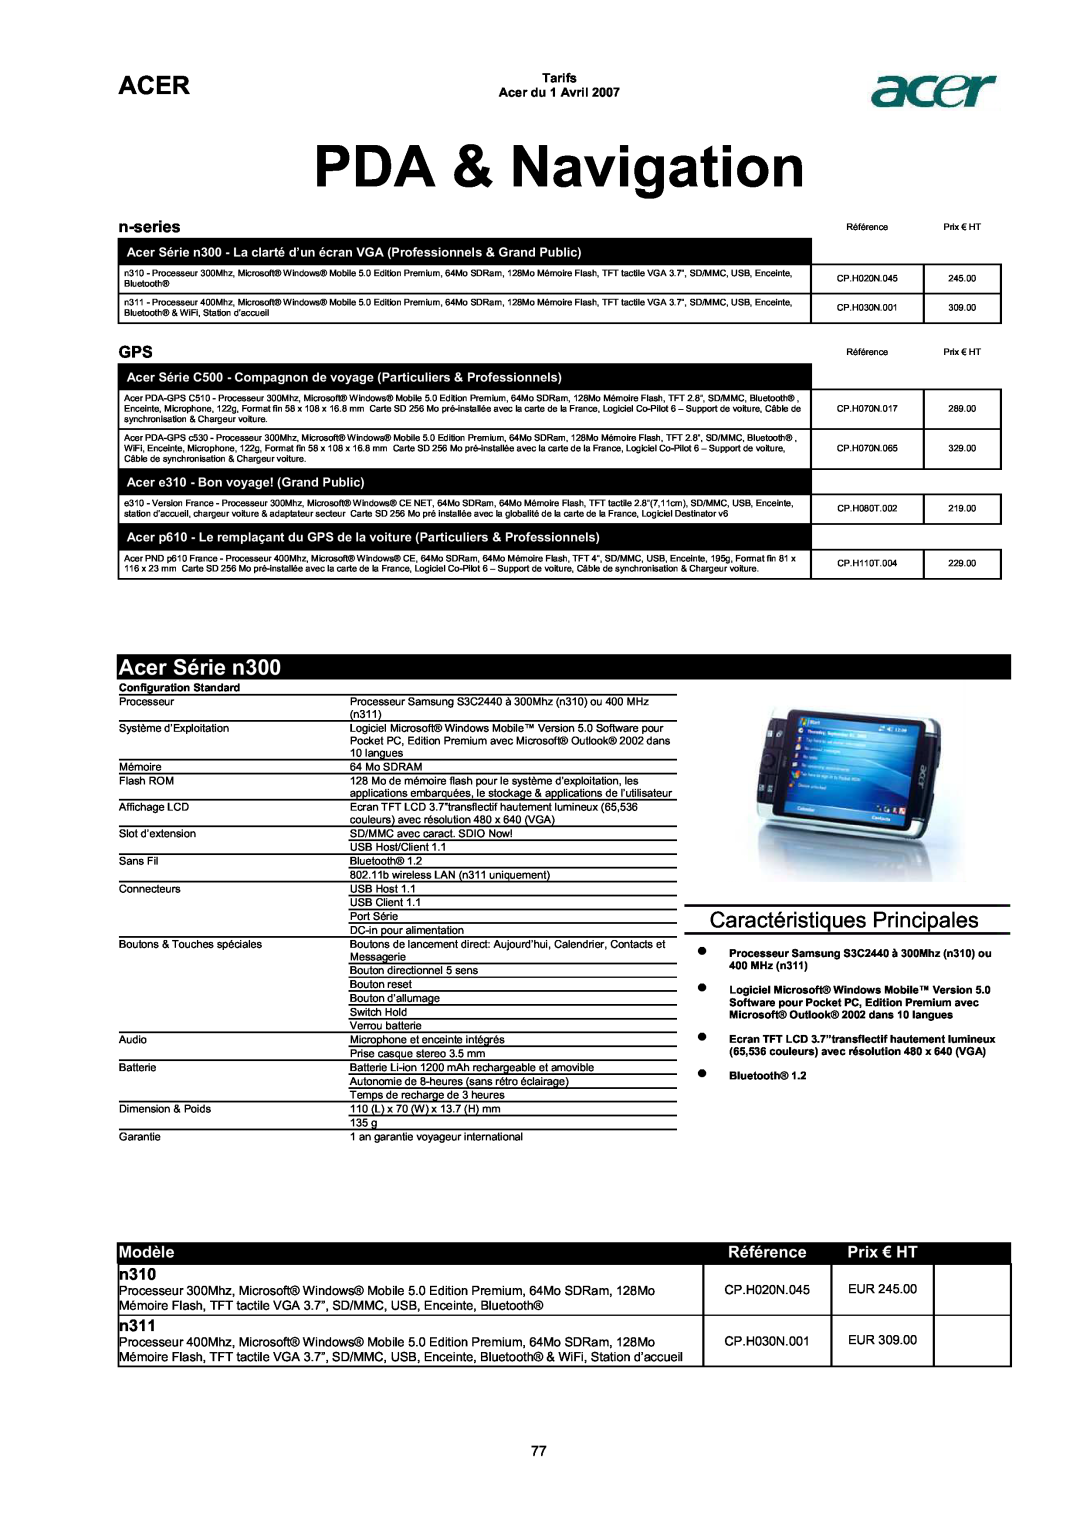 Acer AC713B-17 PDA & Navigation, Acer Série n300, n-series, n310, n311, Caractéristiques Principales, Modèle, Référence 